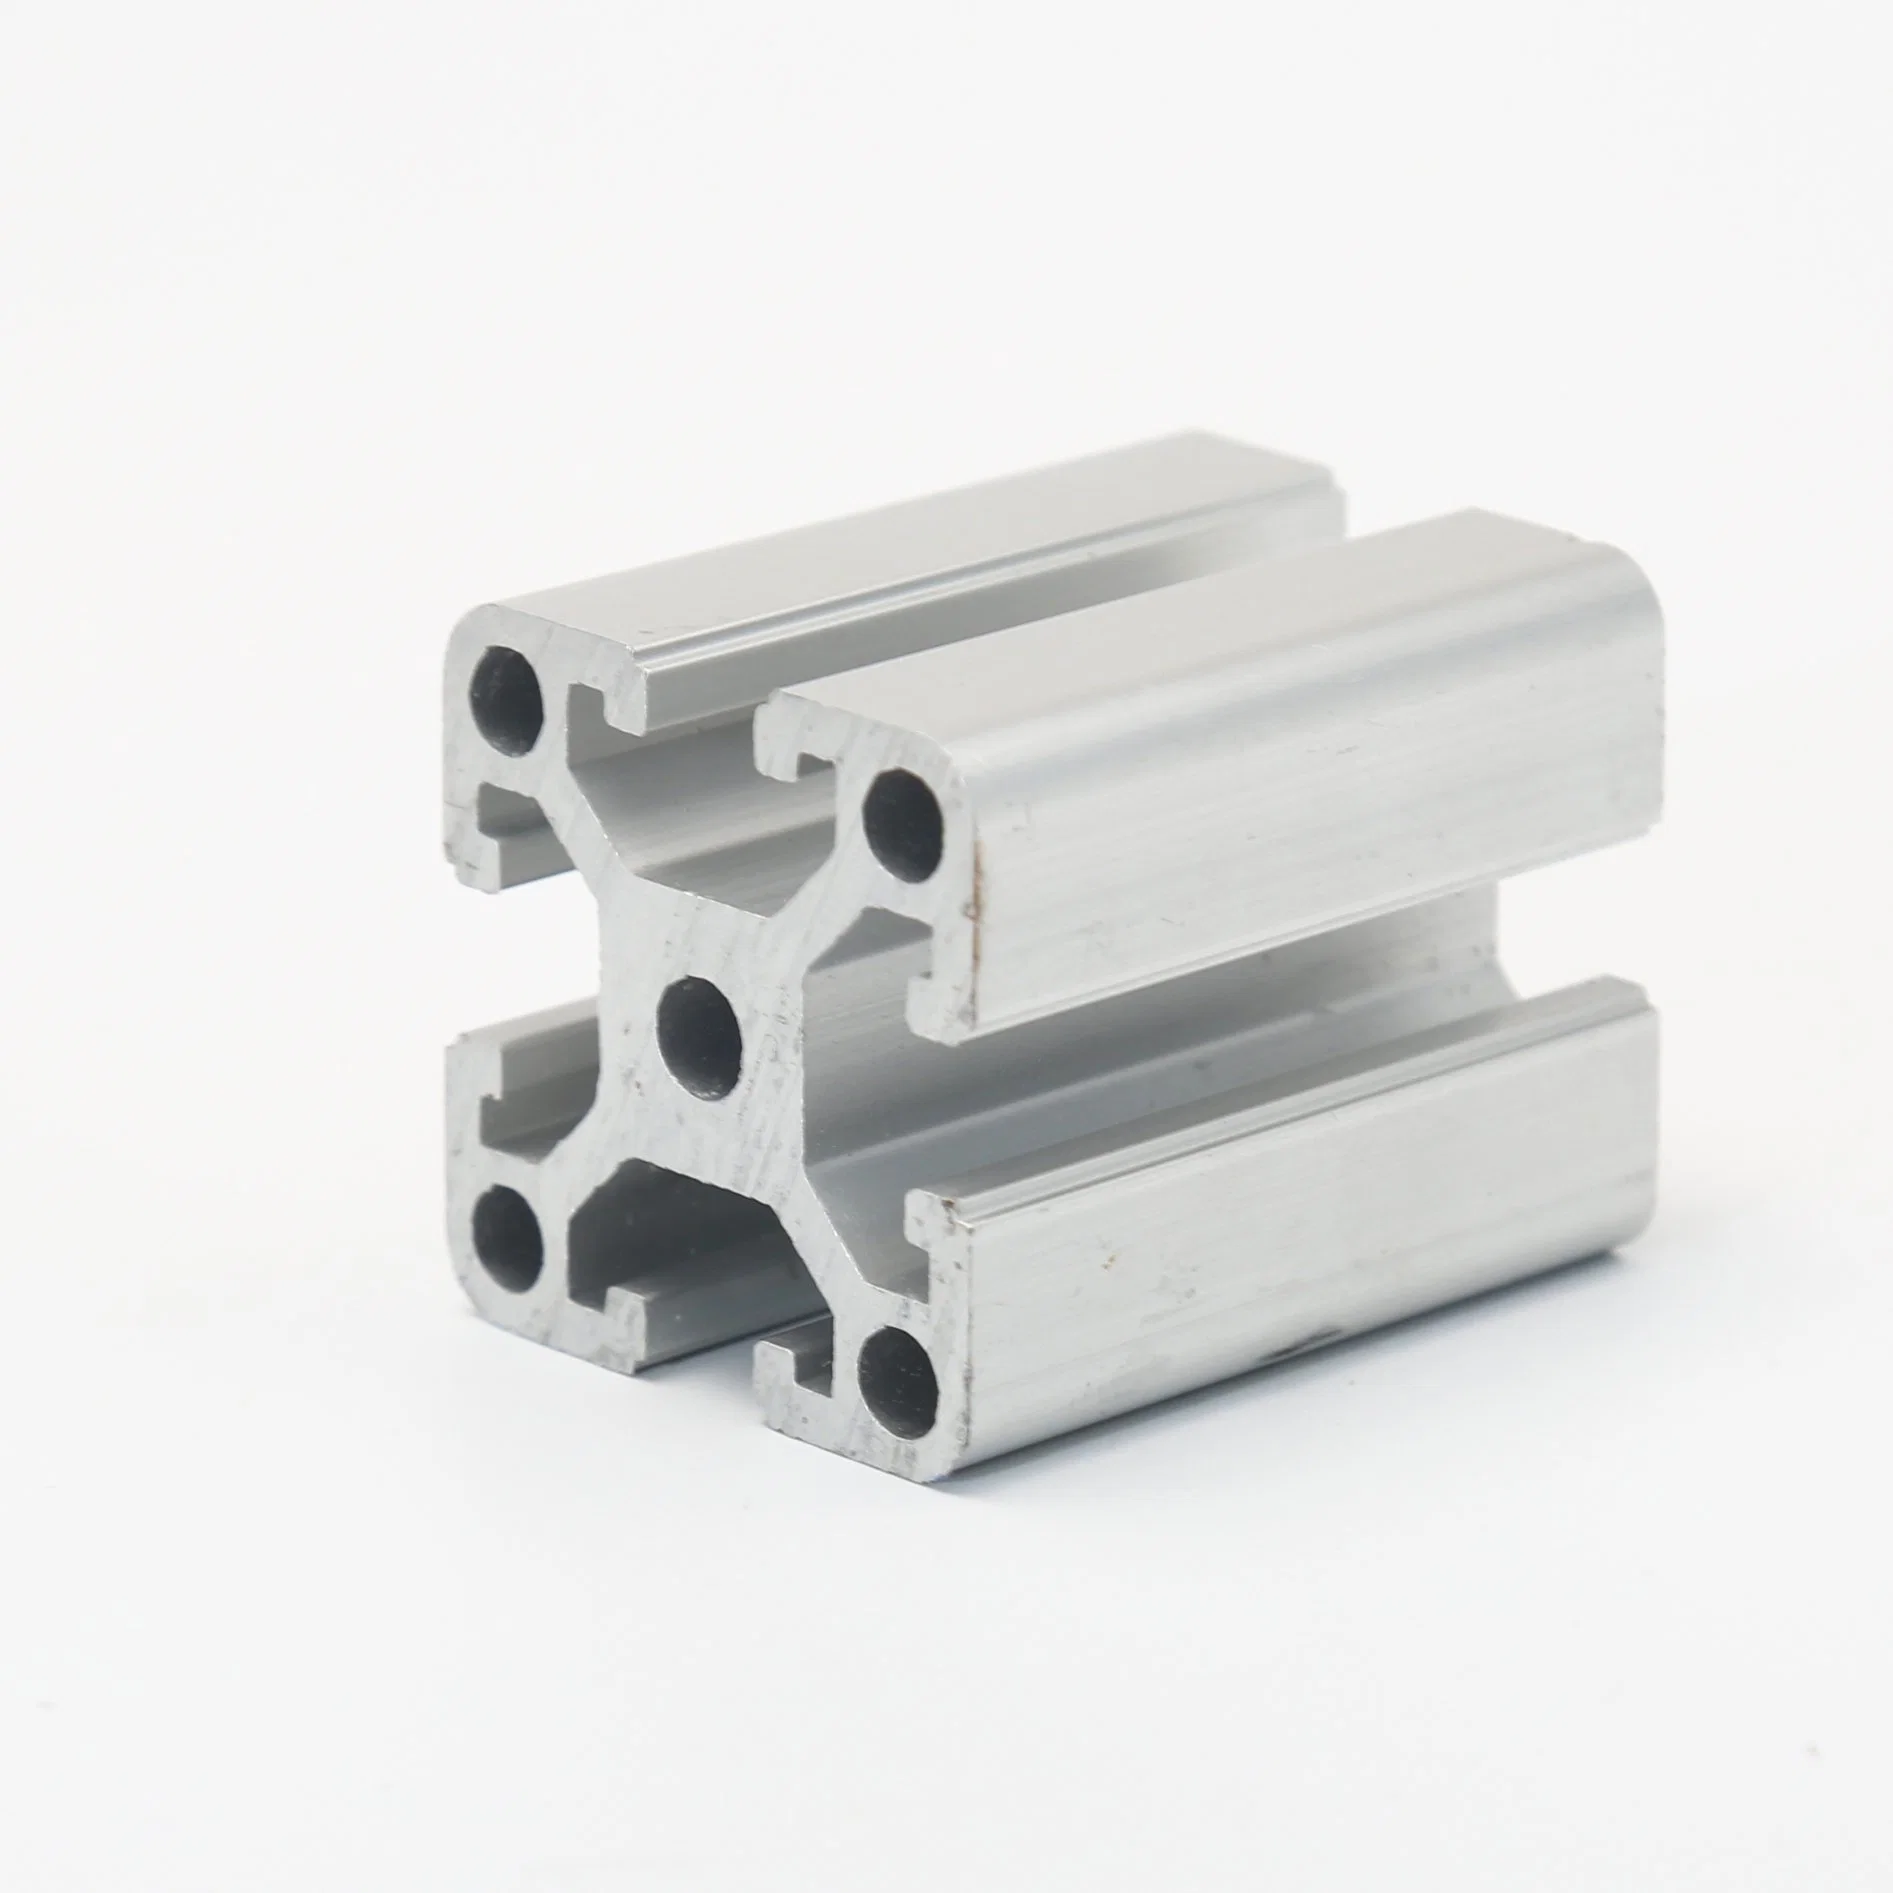 OEM Extrusion Aluminium Manufacturer for Industrial Aluminum T-Slot Profile